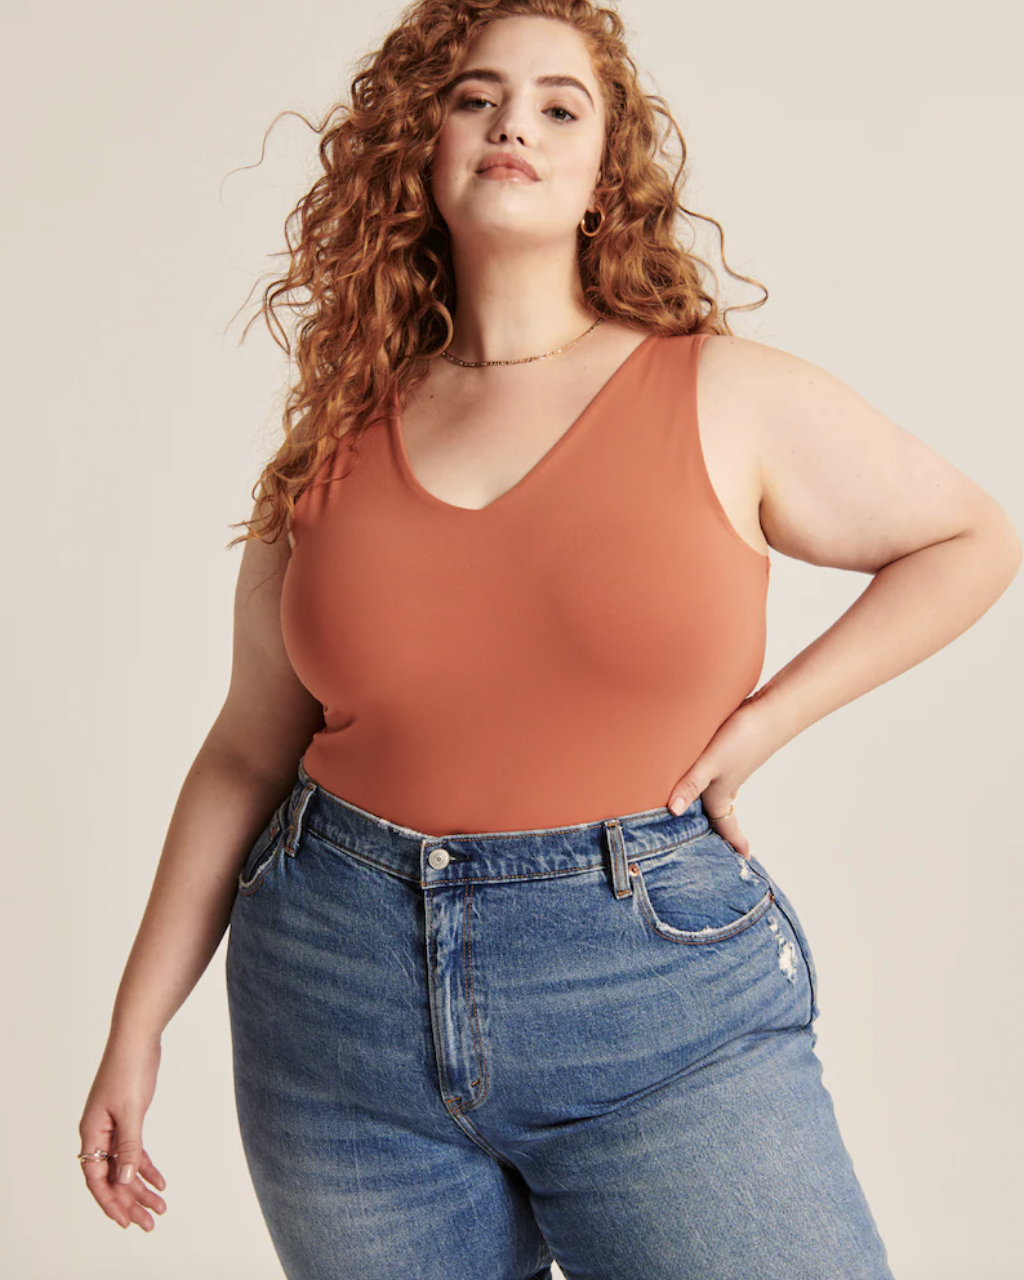 model wearing the bodysuit in orange